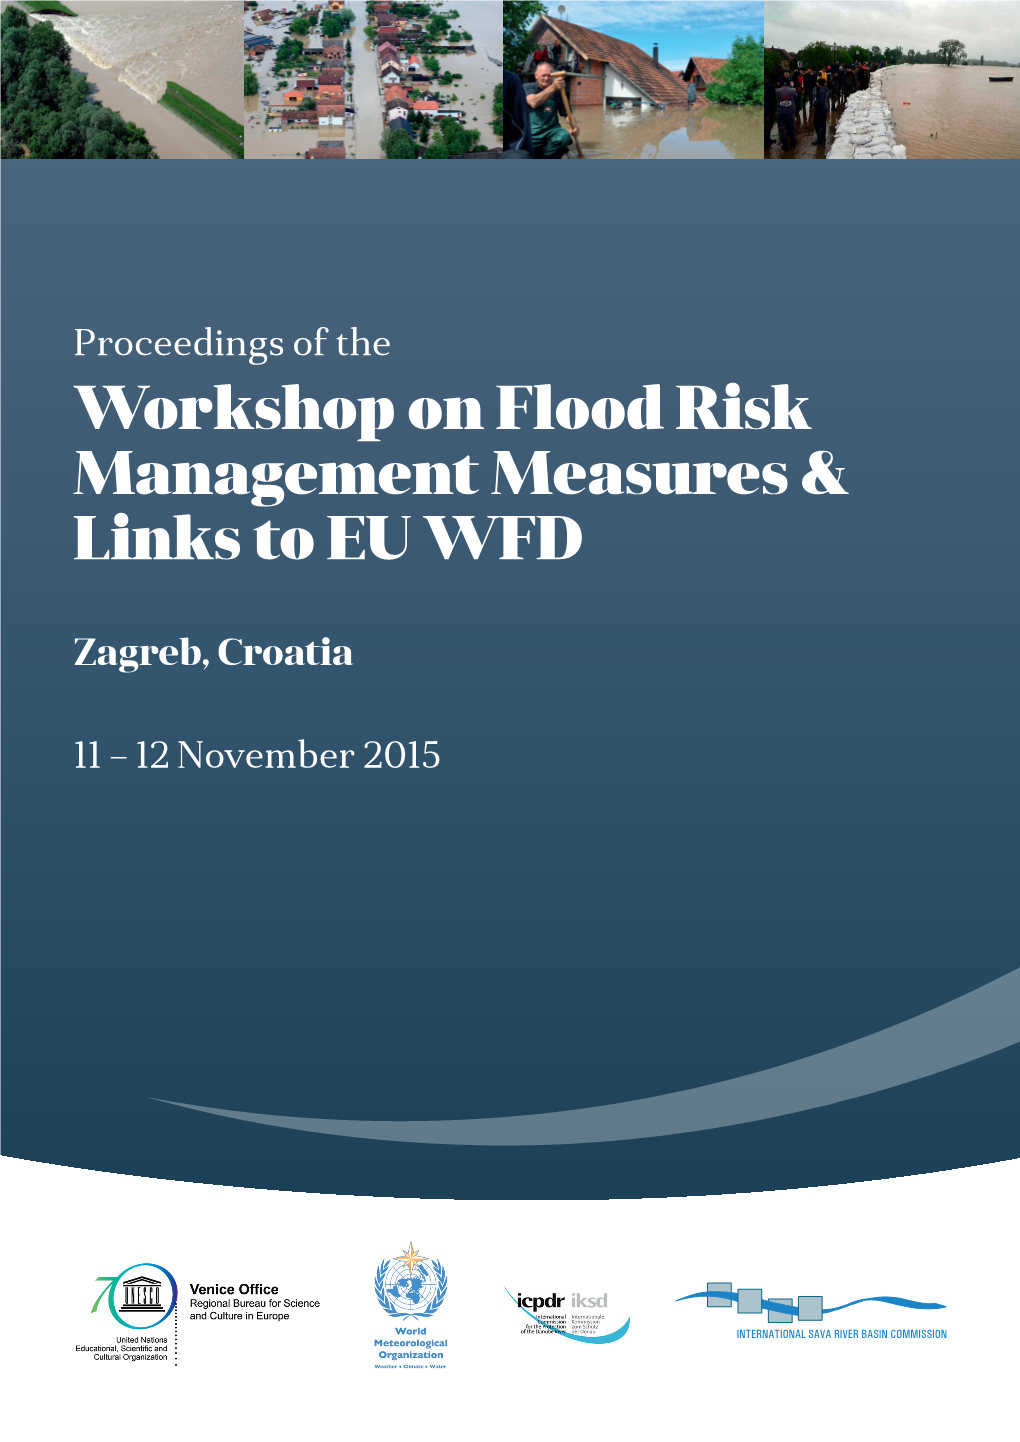 Workshop on Flood Risk Management Measures & Links to EU